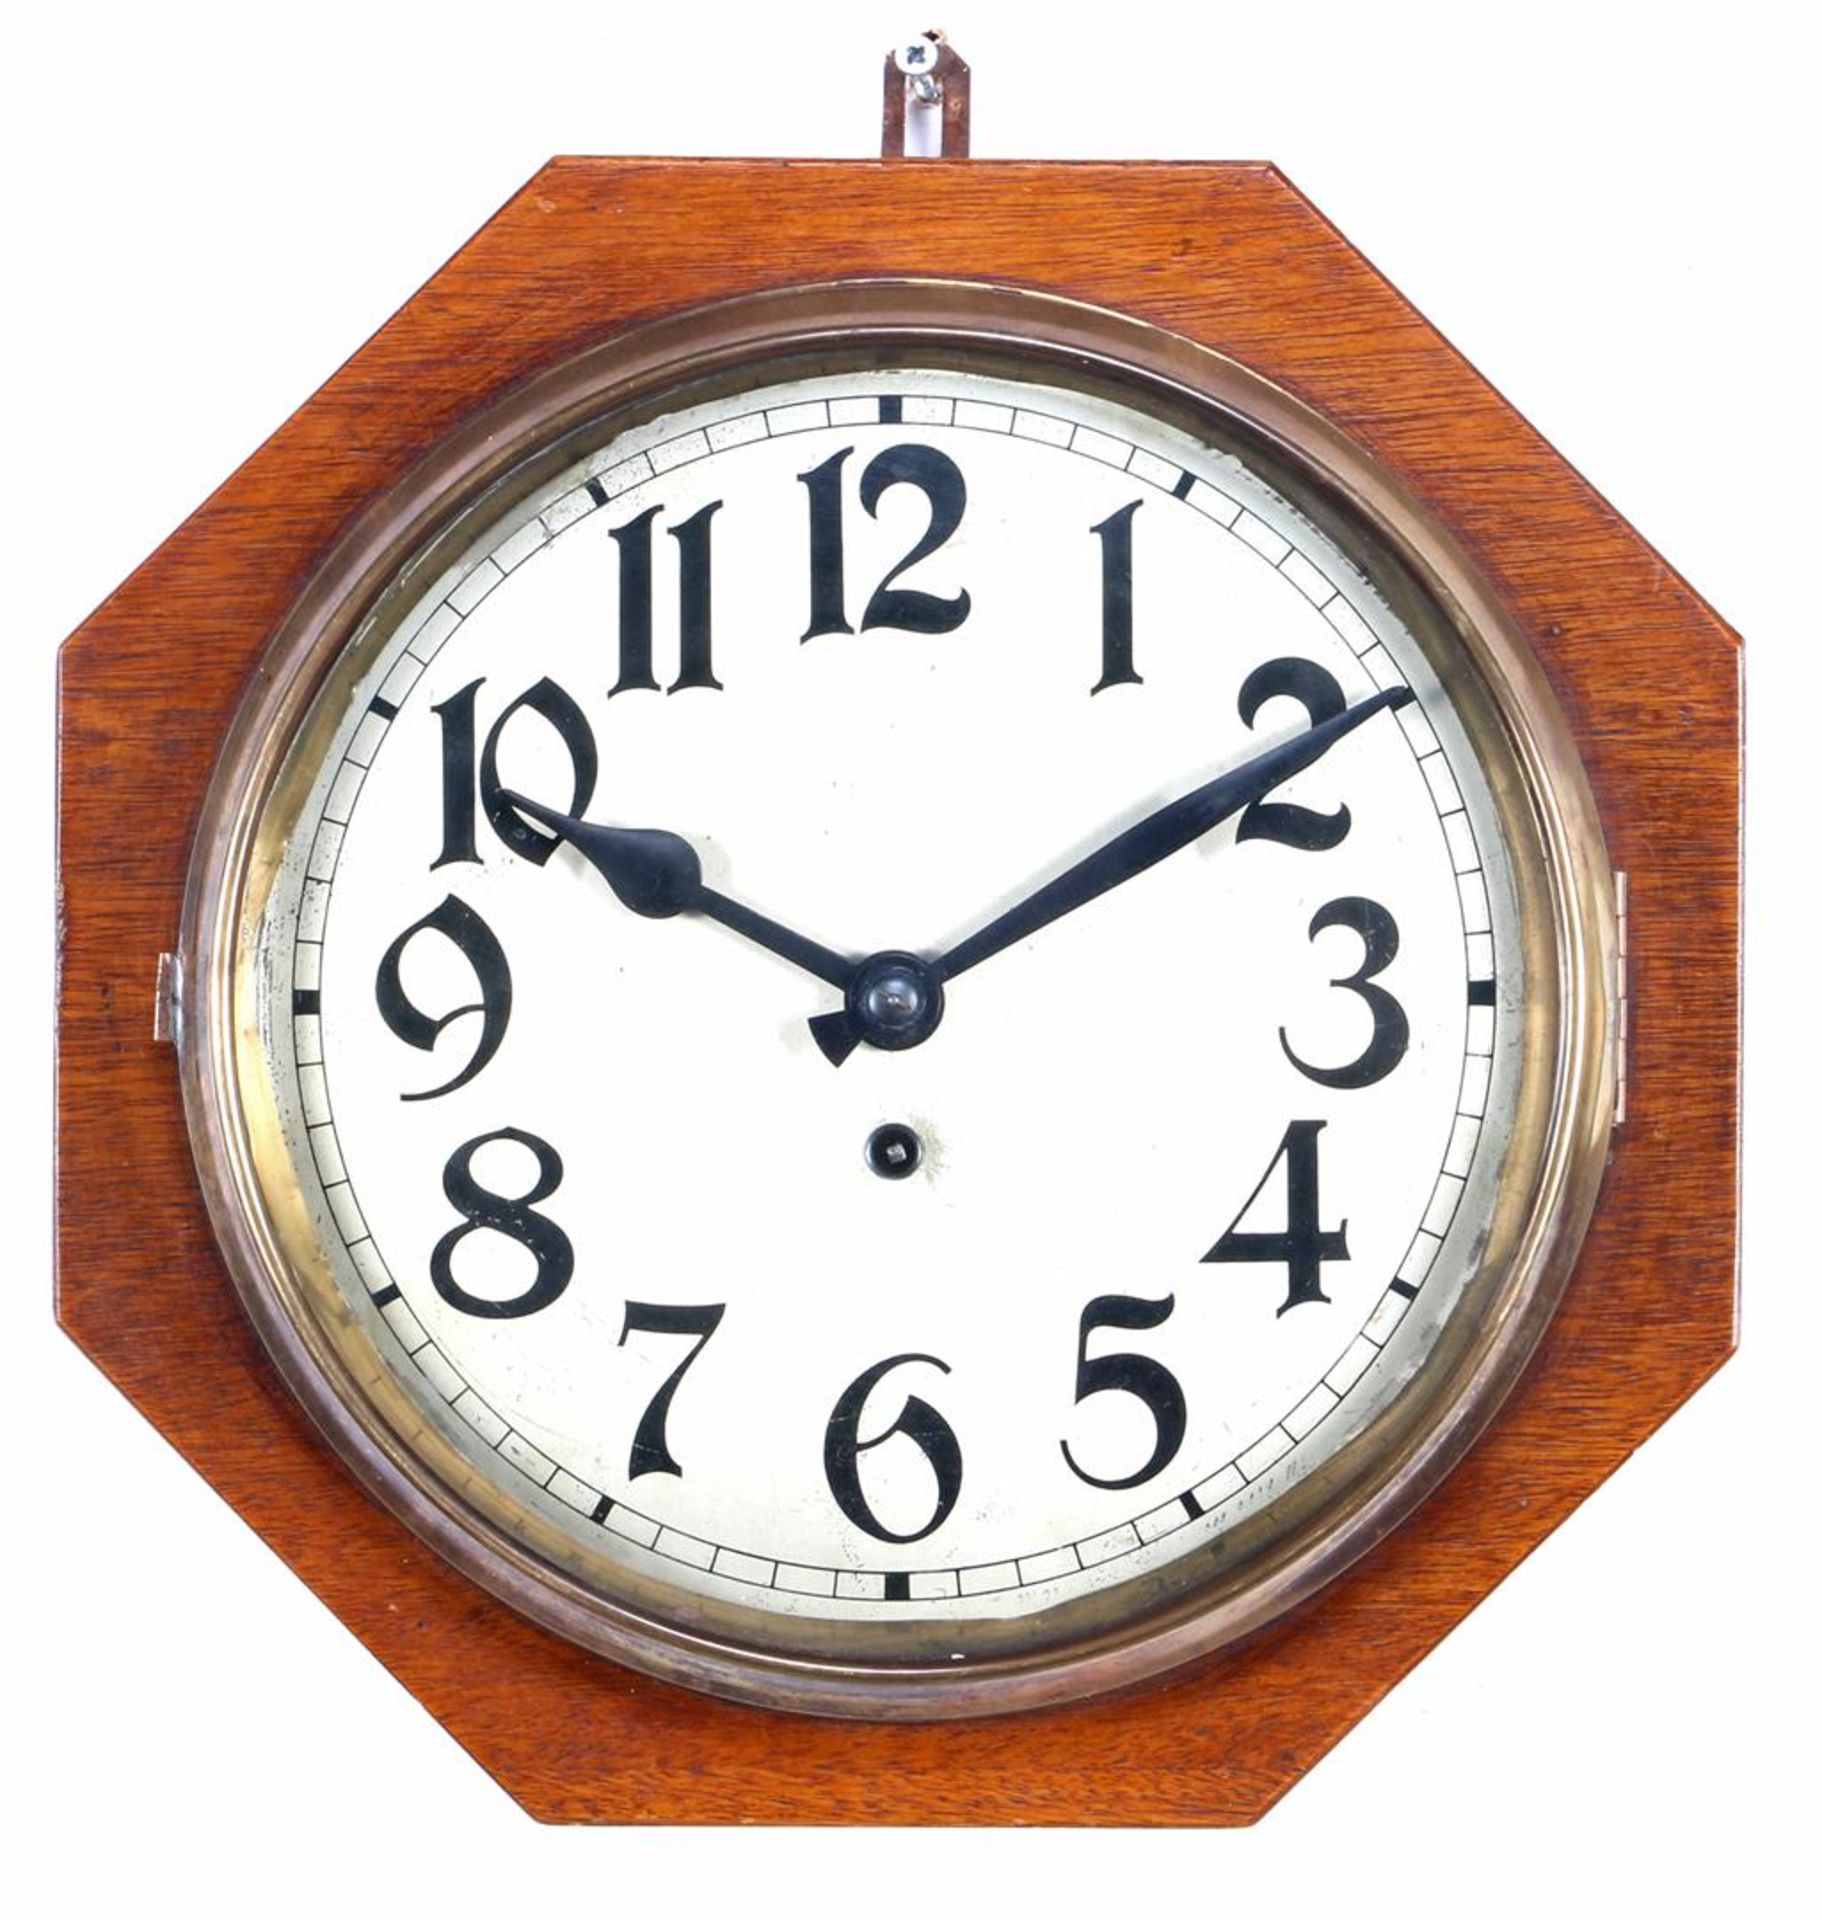 Octagonal school clock in oak case